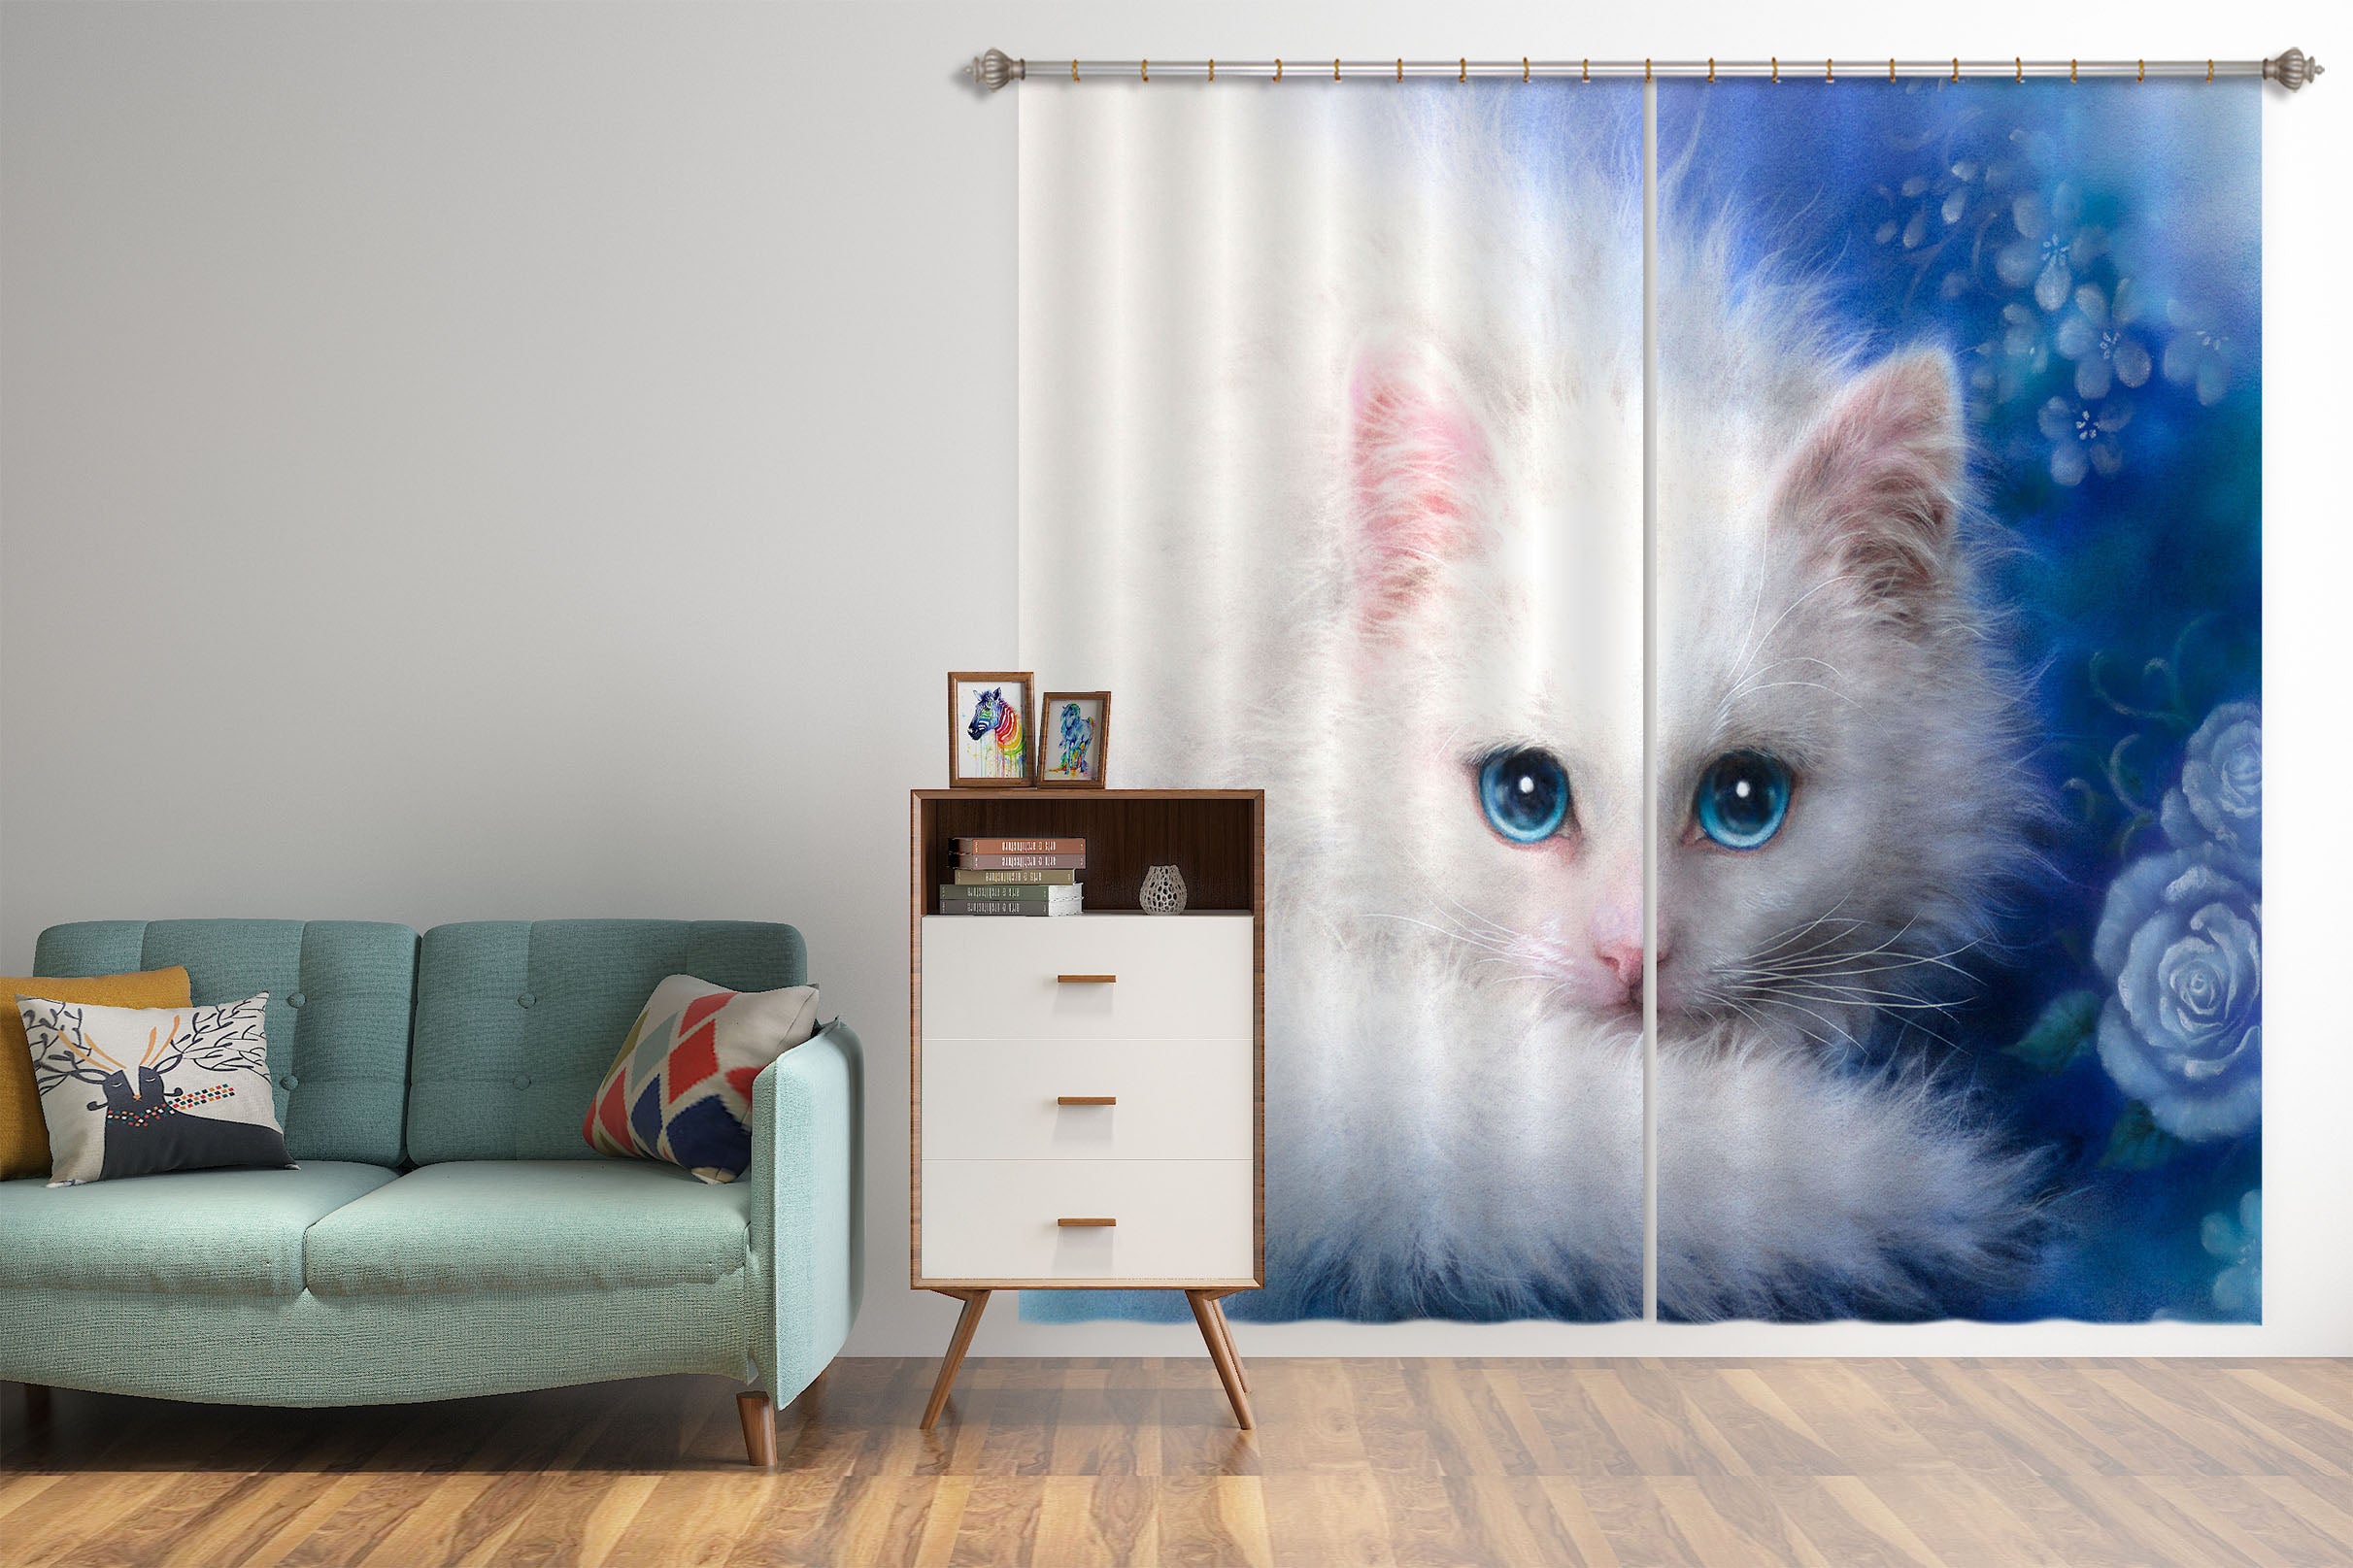 3D White Cat 9083 Kayomi Harai Curtain Curtains Drapes